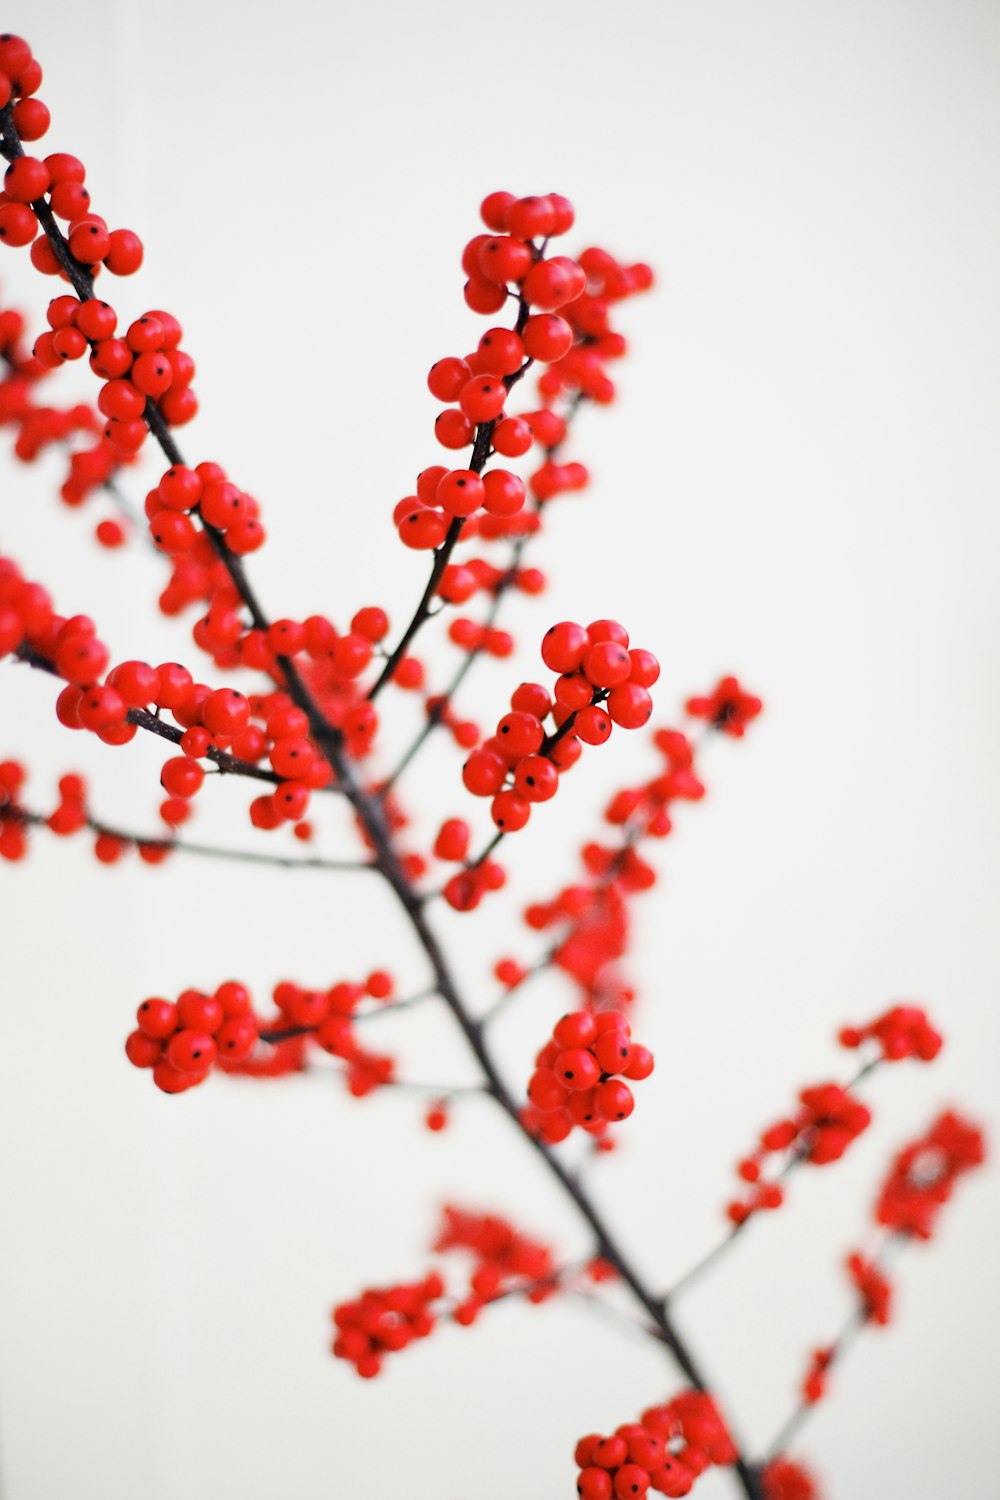 fotografia macro de frutas vermelhas